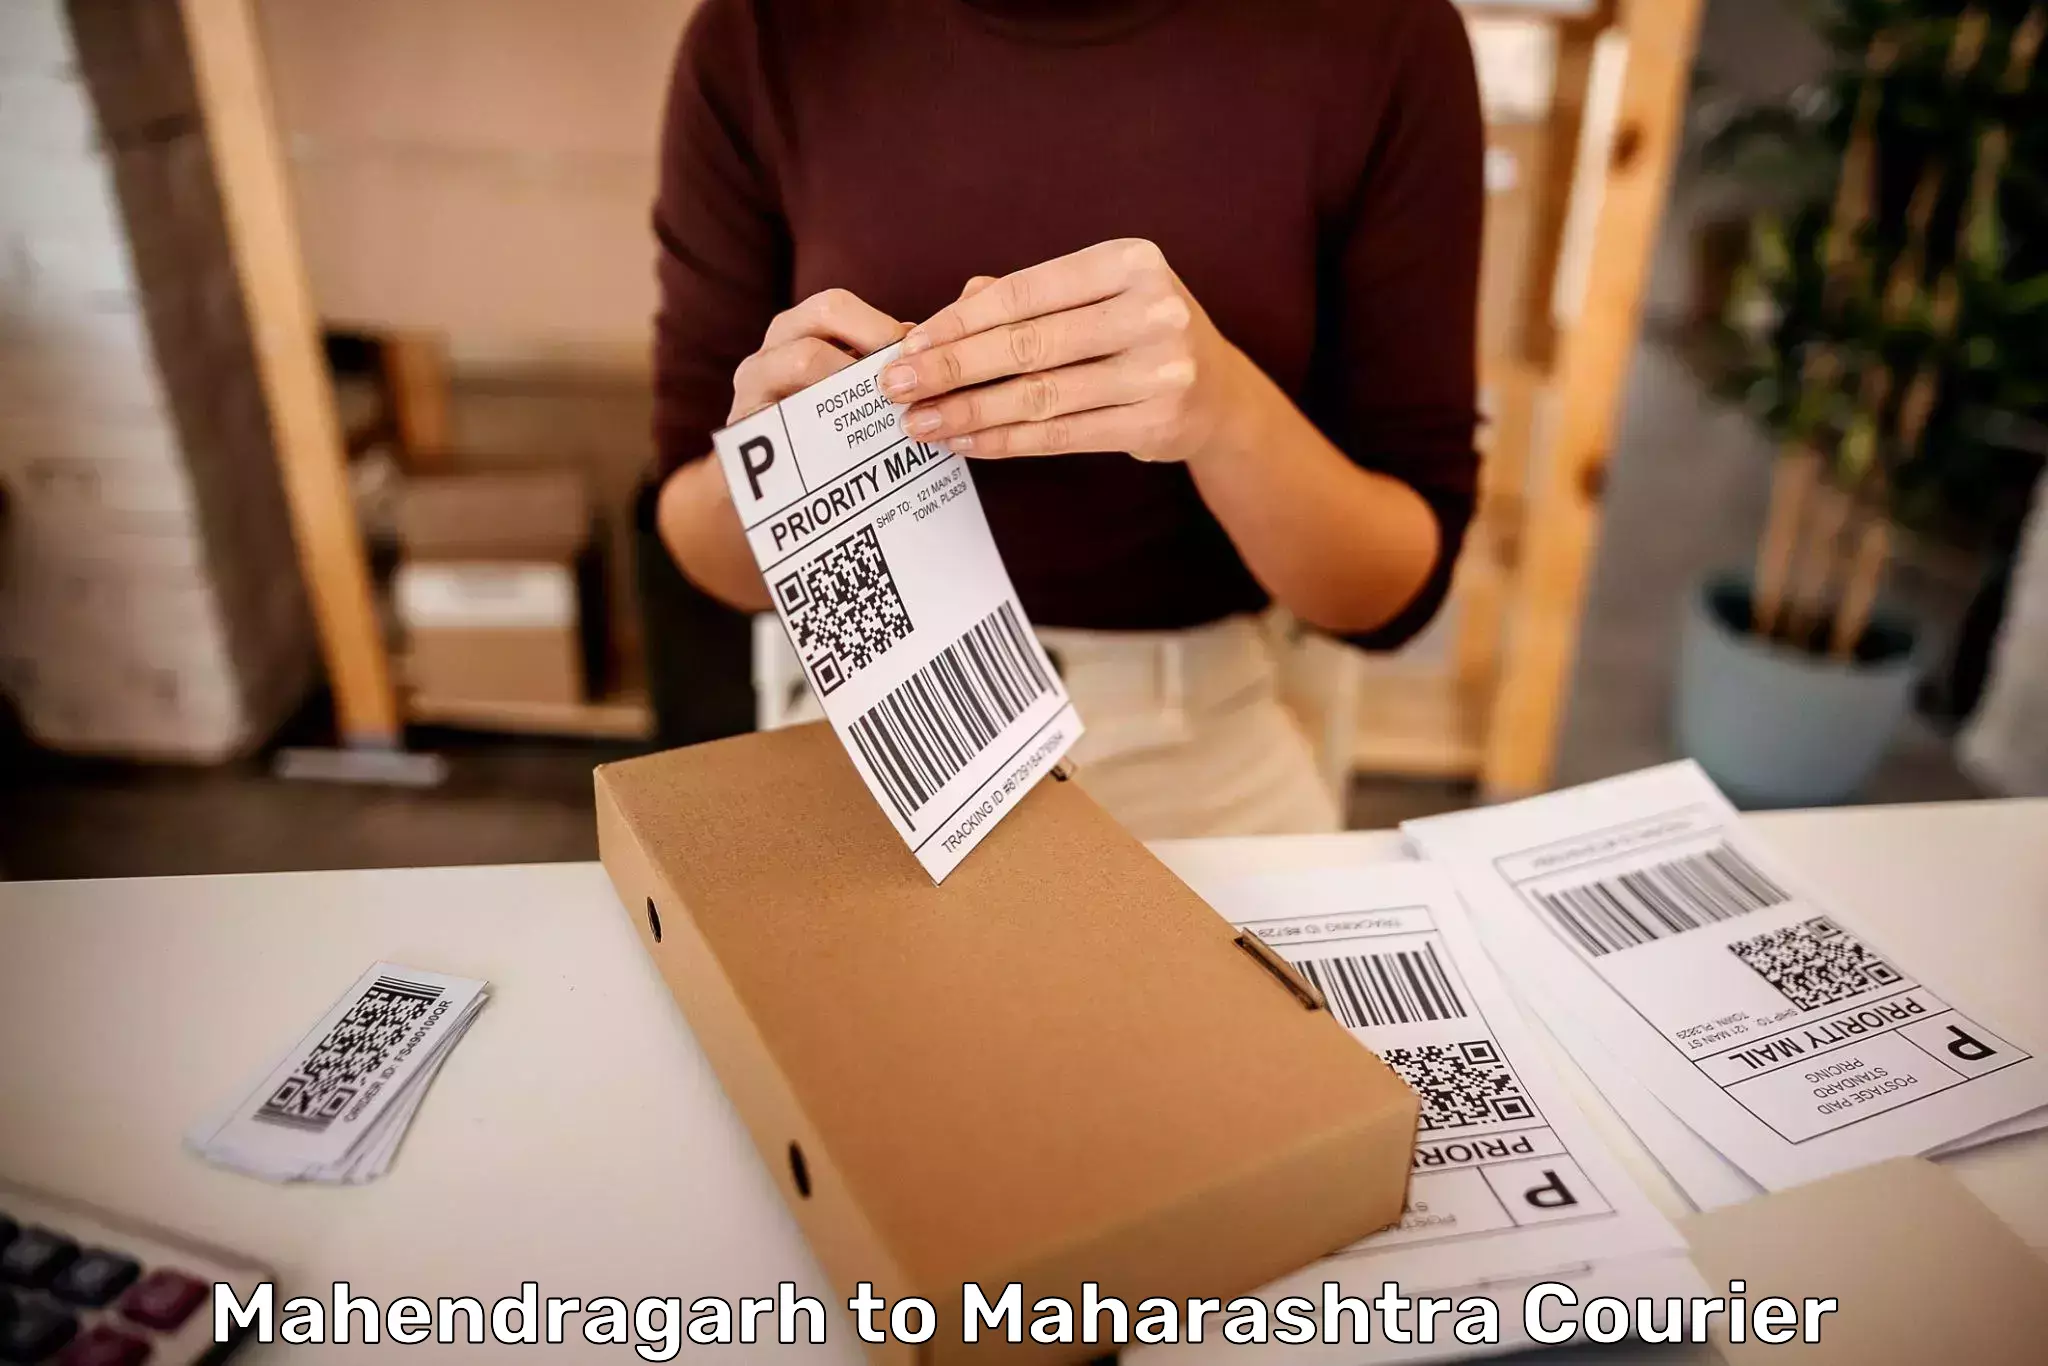 Luggage shipping specialists Mahendragarh to Maharashtra